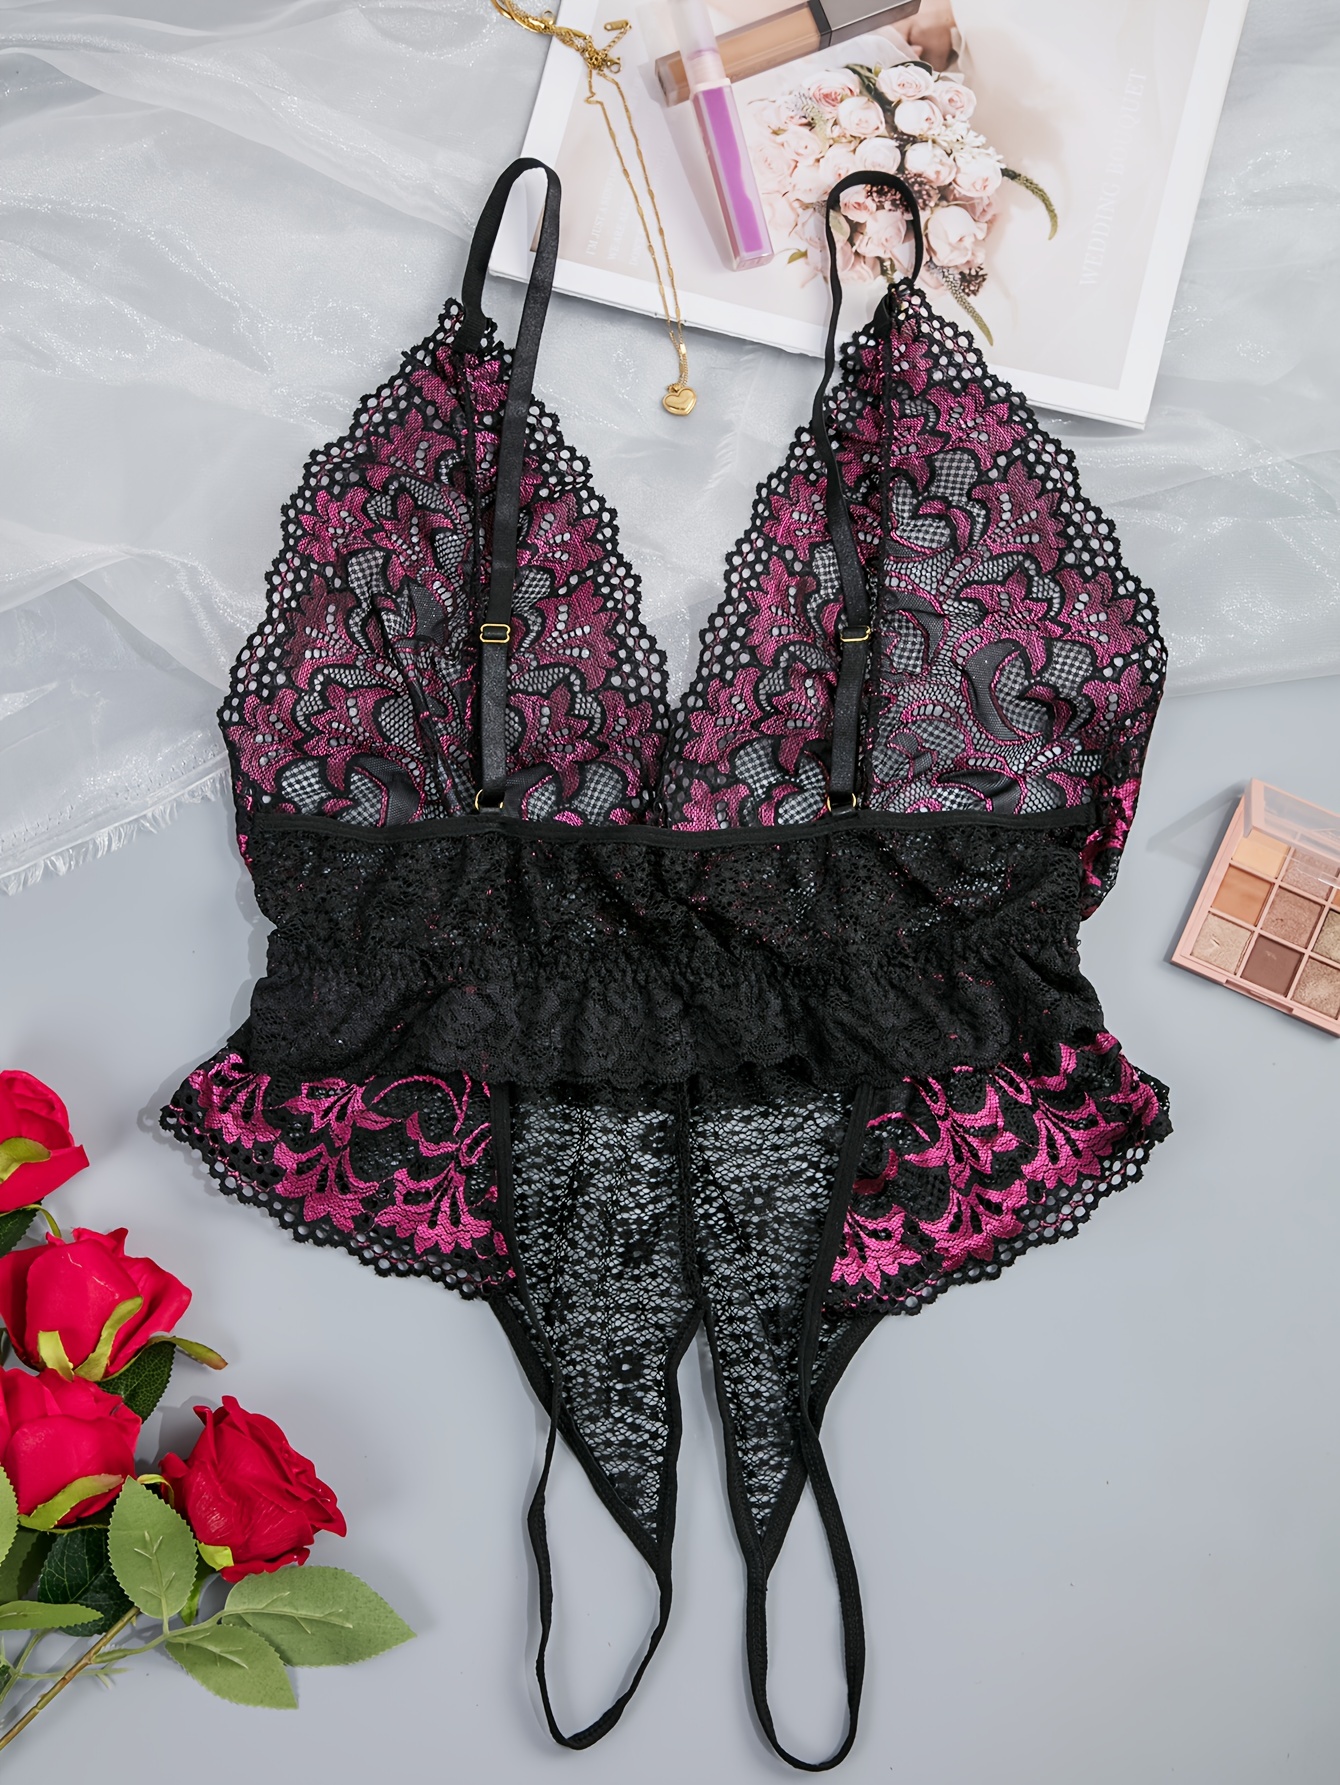 Torrid Satin Pink Floral Bodysuit Lingerie Plus Size 3 / 3X Black Lace  Intimates